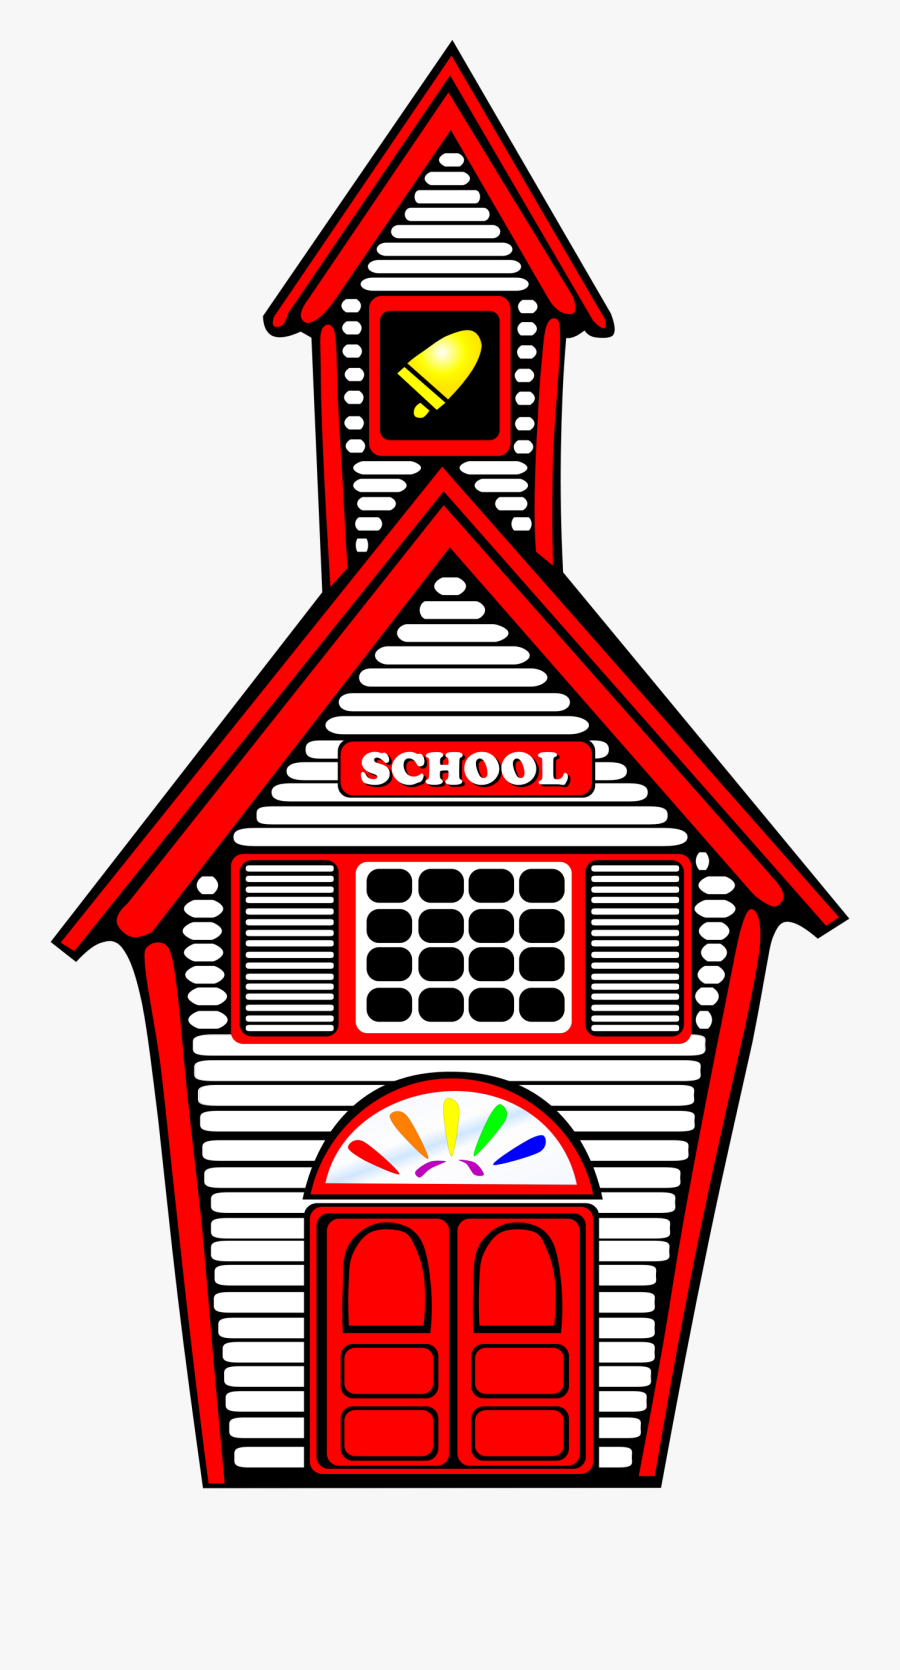 White Schoolhouse - Schoolhouse Clipart, Transparent Clipart